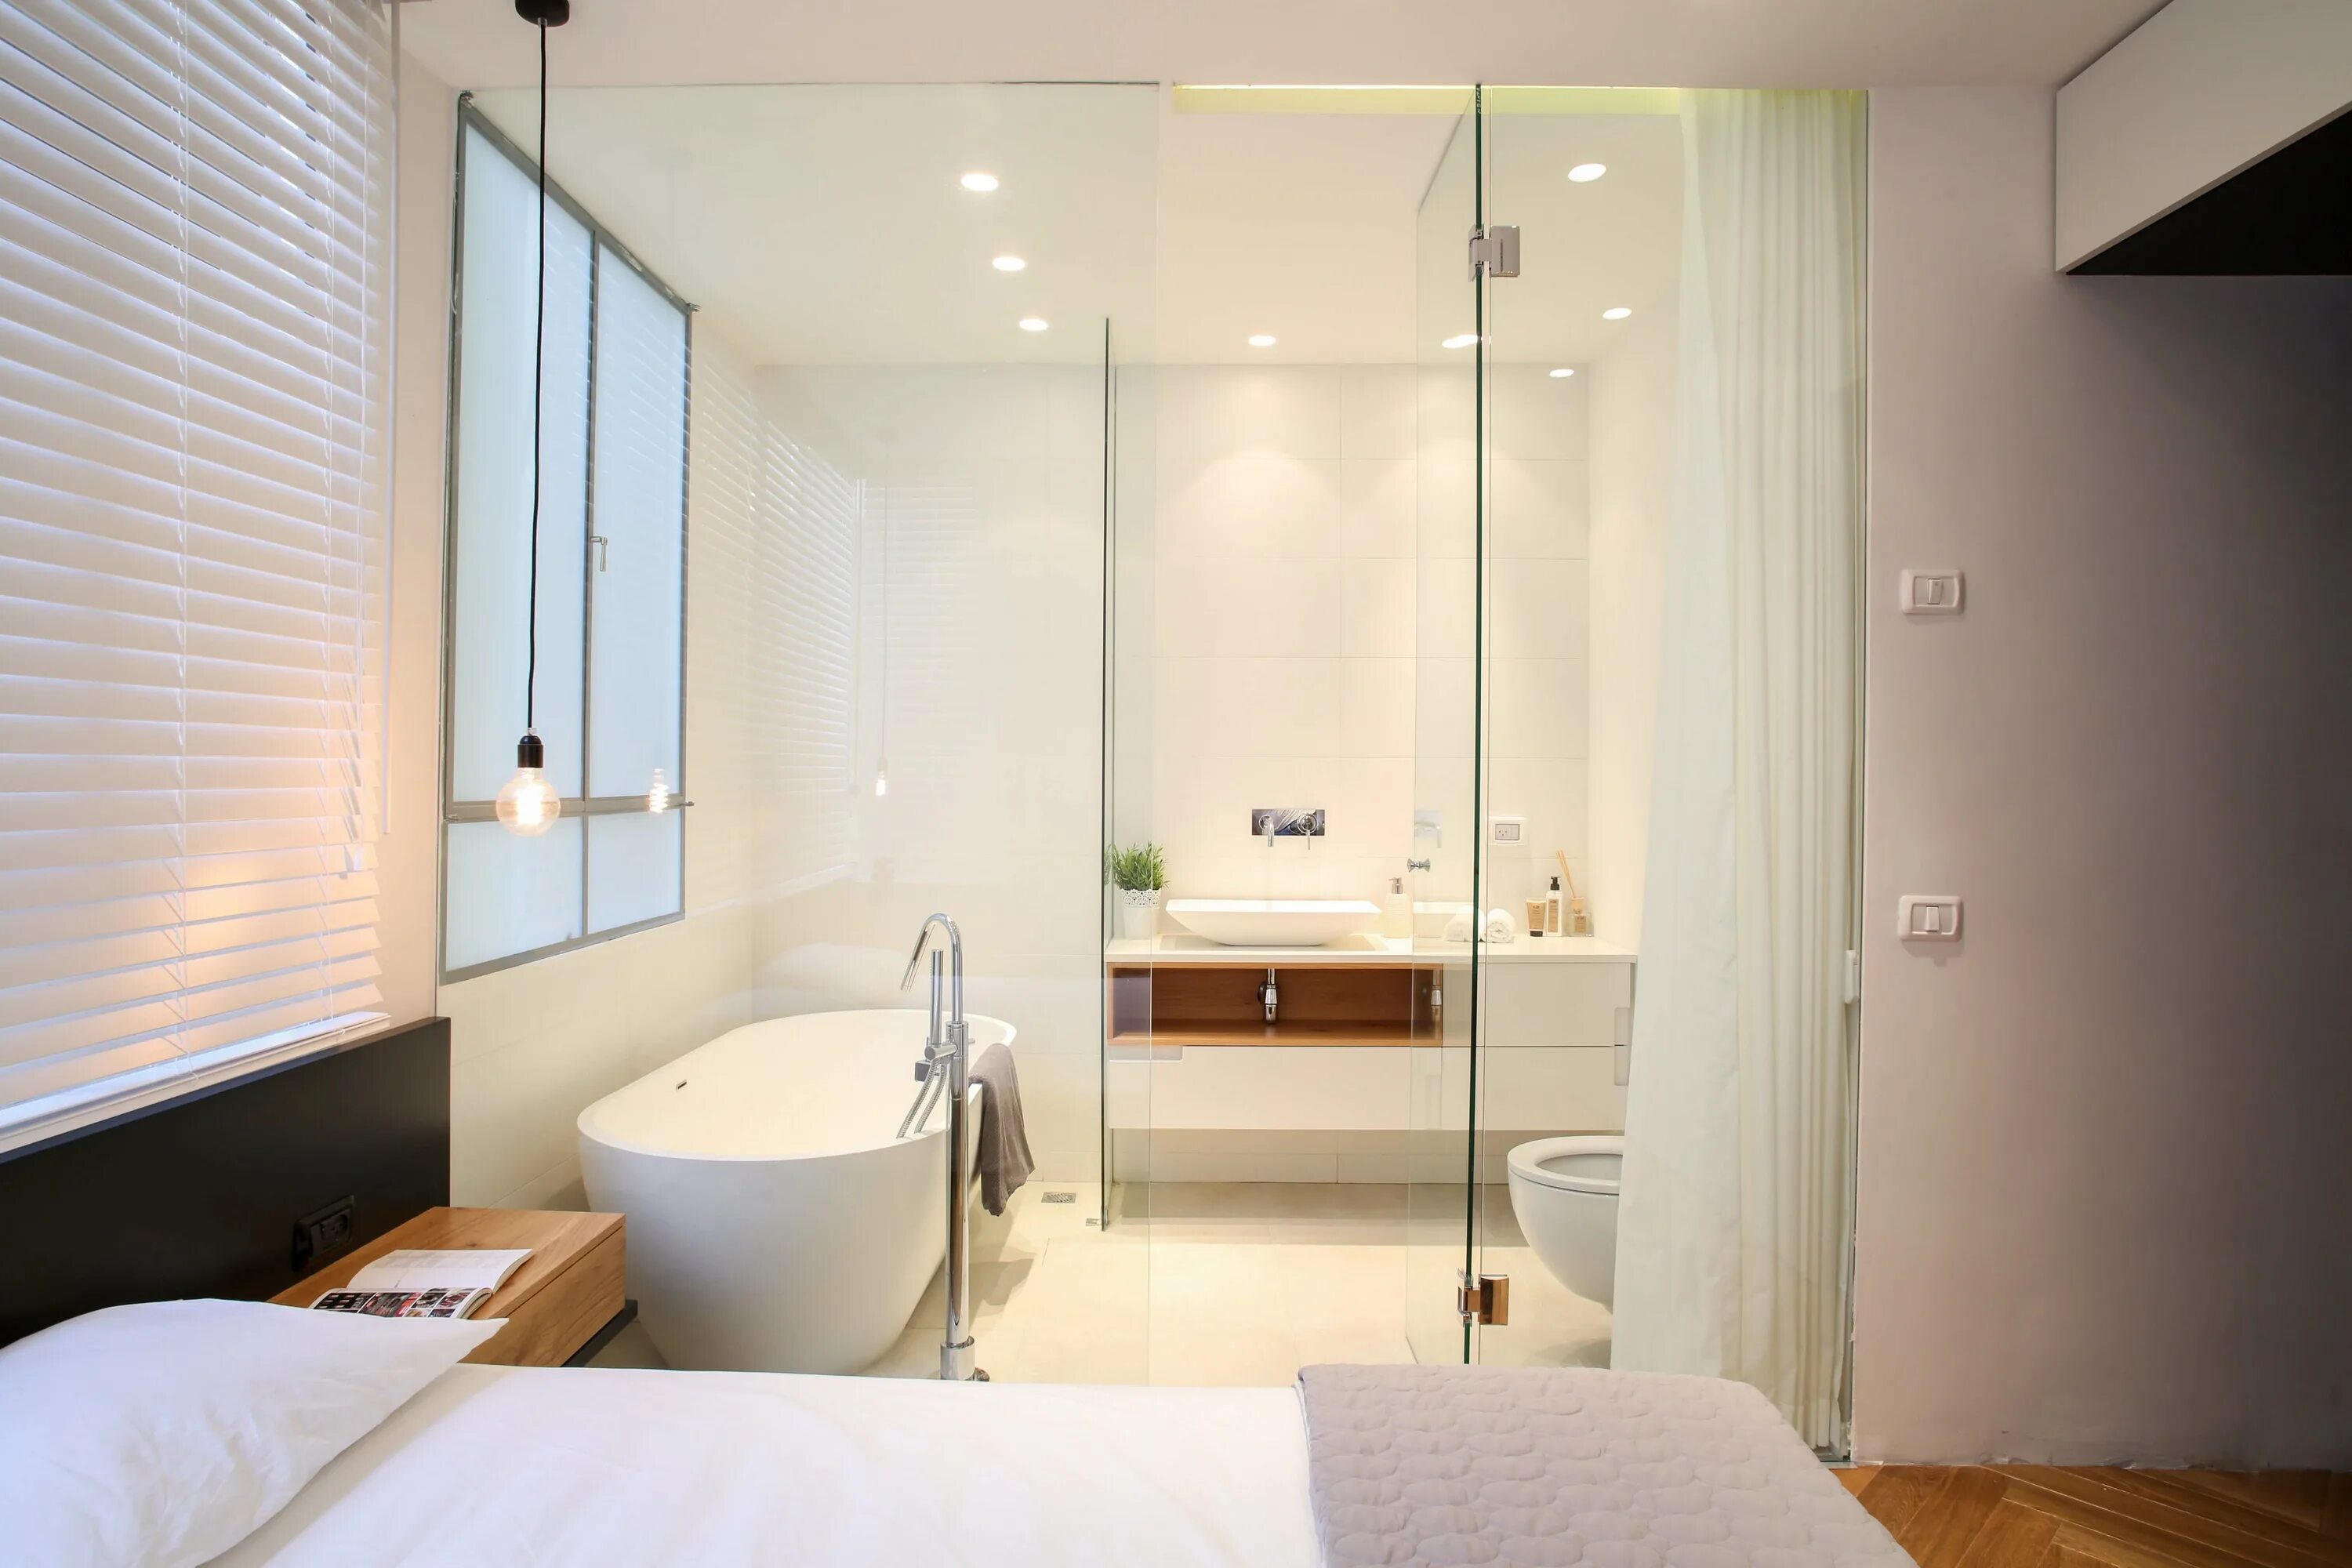 Ванная совмещенная со спальней. Ванная комната со стеклянной перегородкой. Ванная комната со стеклянными стенами. Ванная со стеклянной стеной.